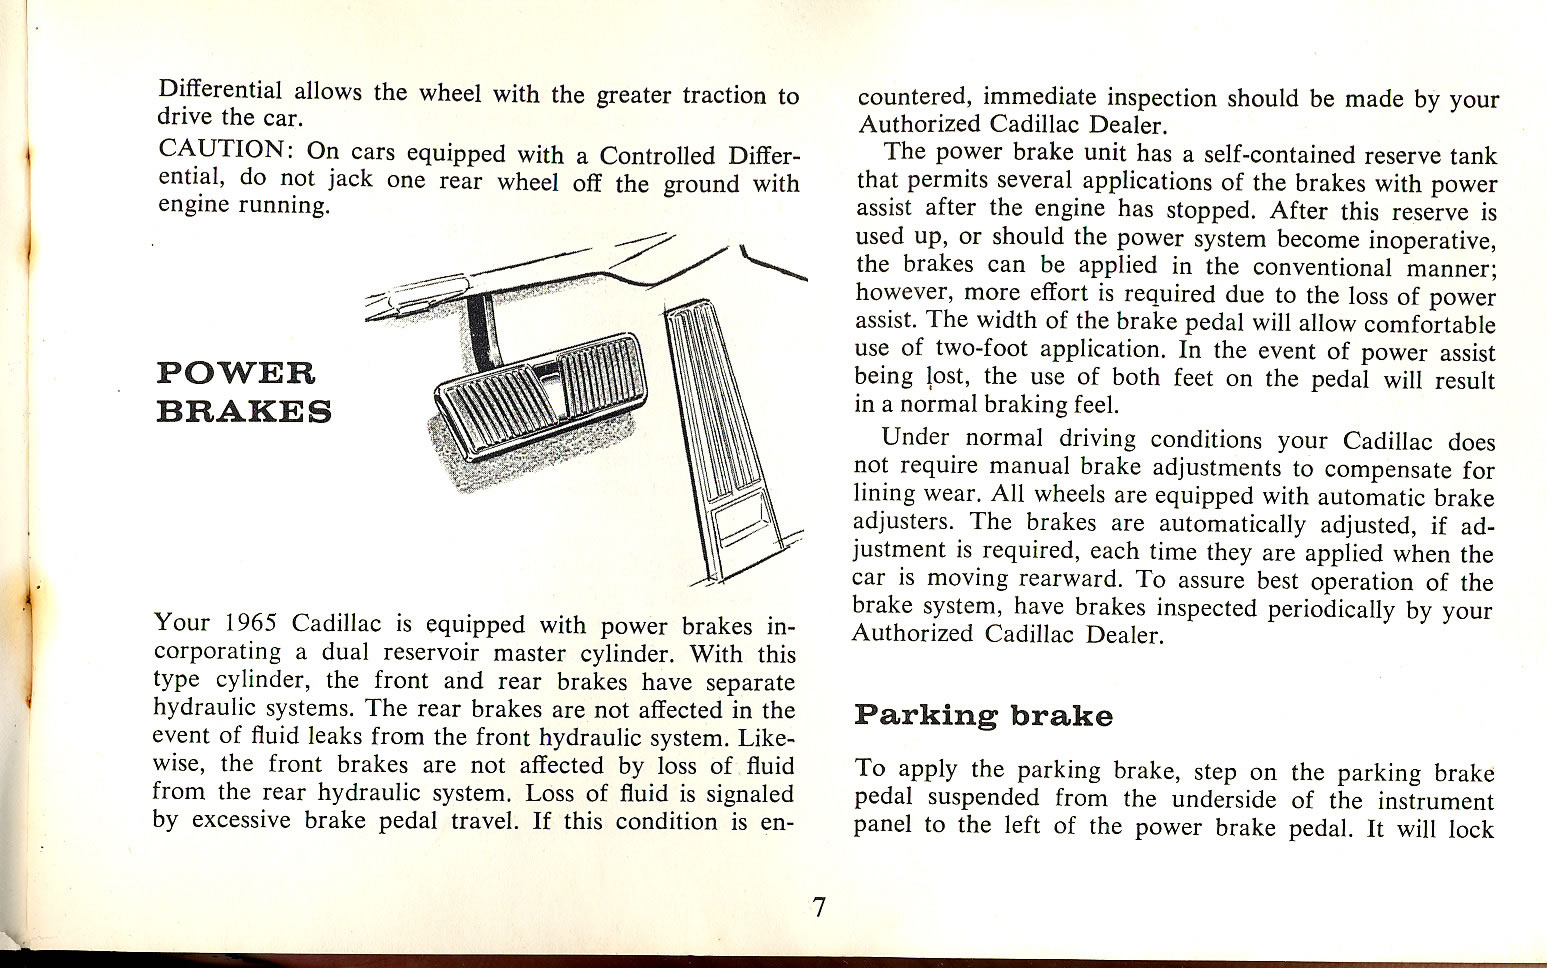 1965 Cadillac Manual-07